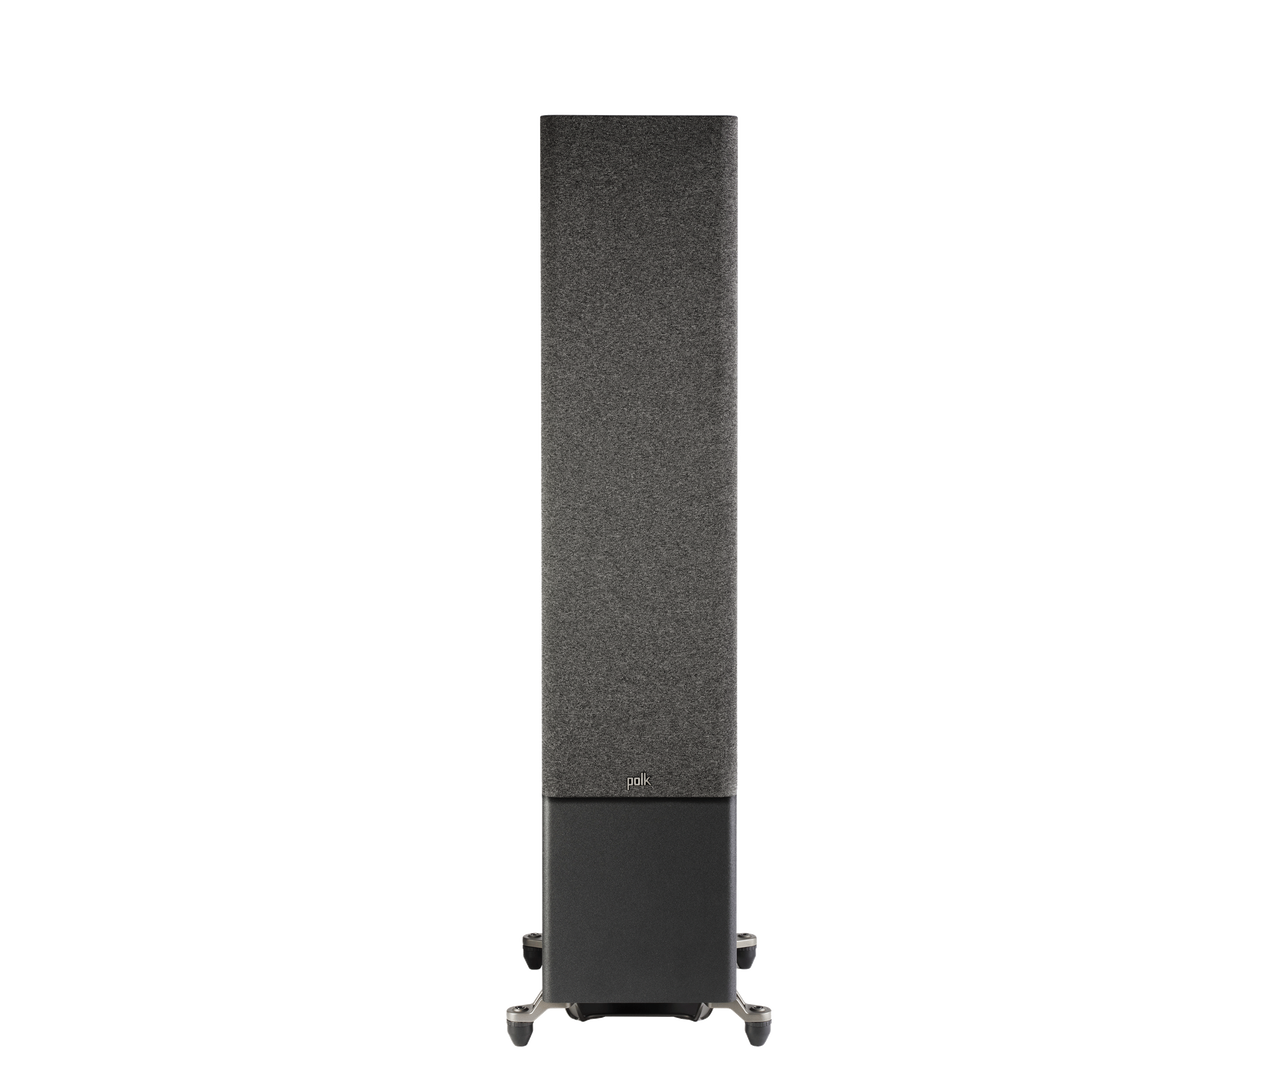 Polk R700 Reserve Series Tower Speakers